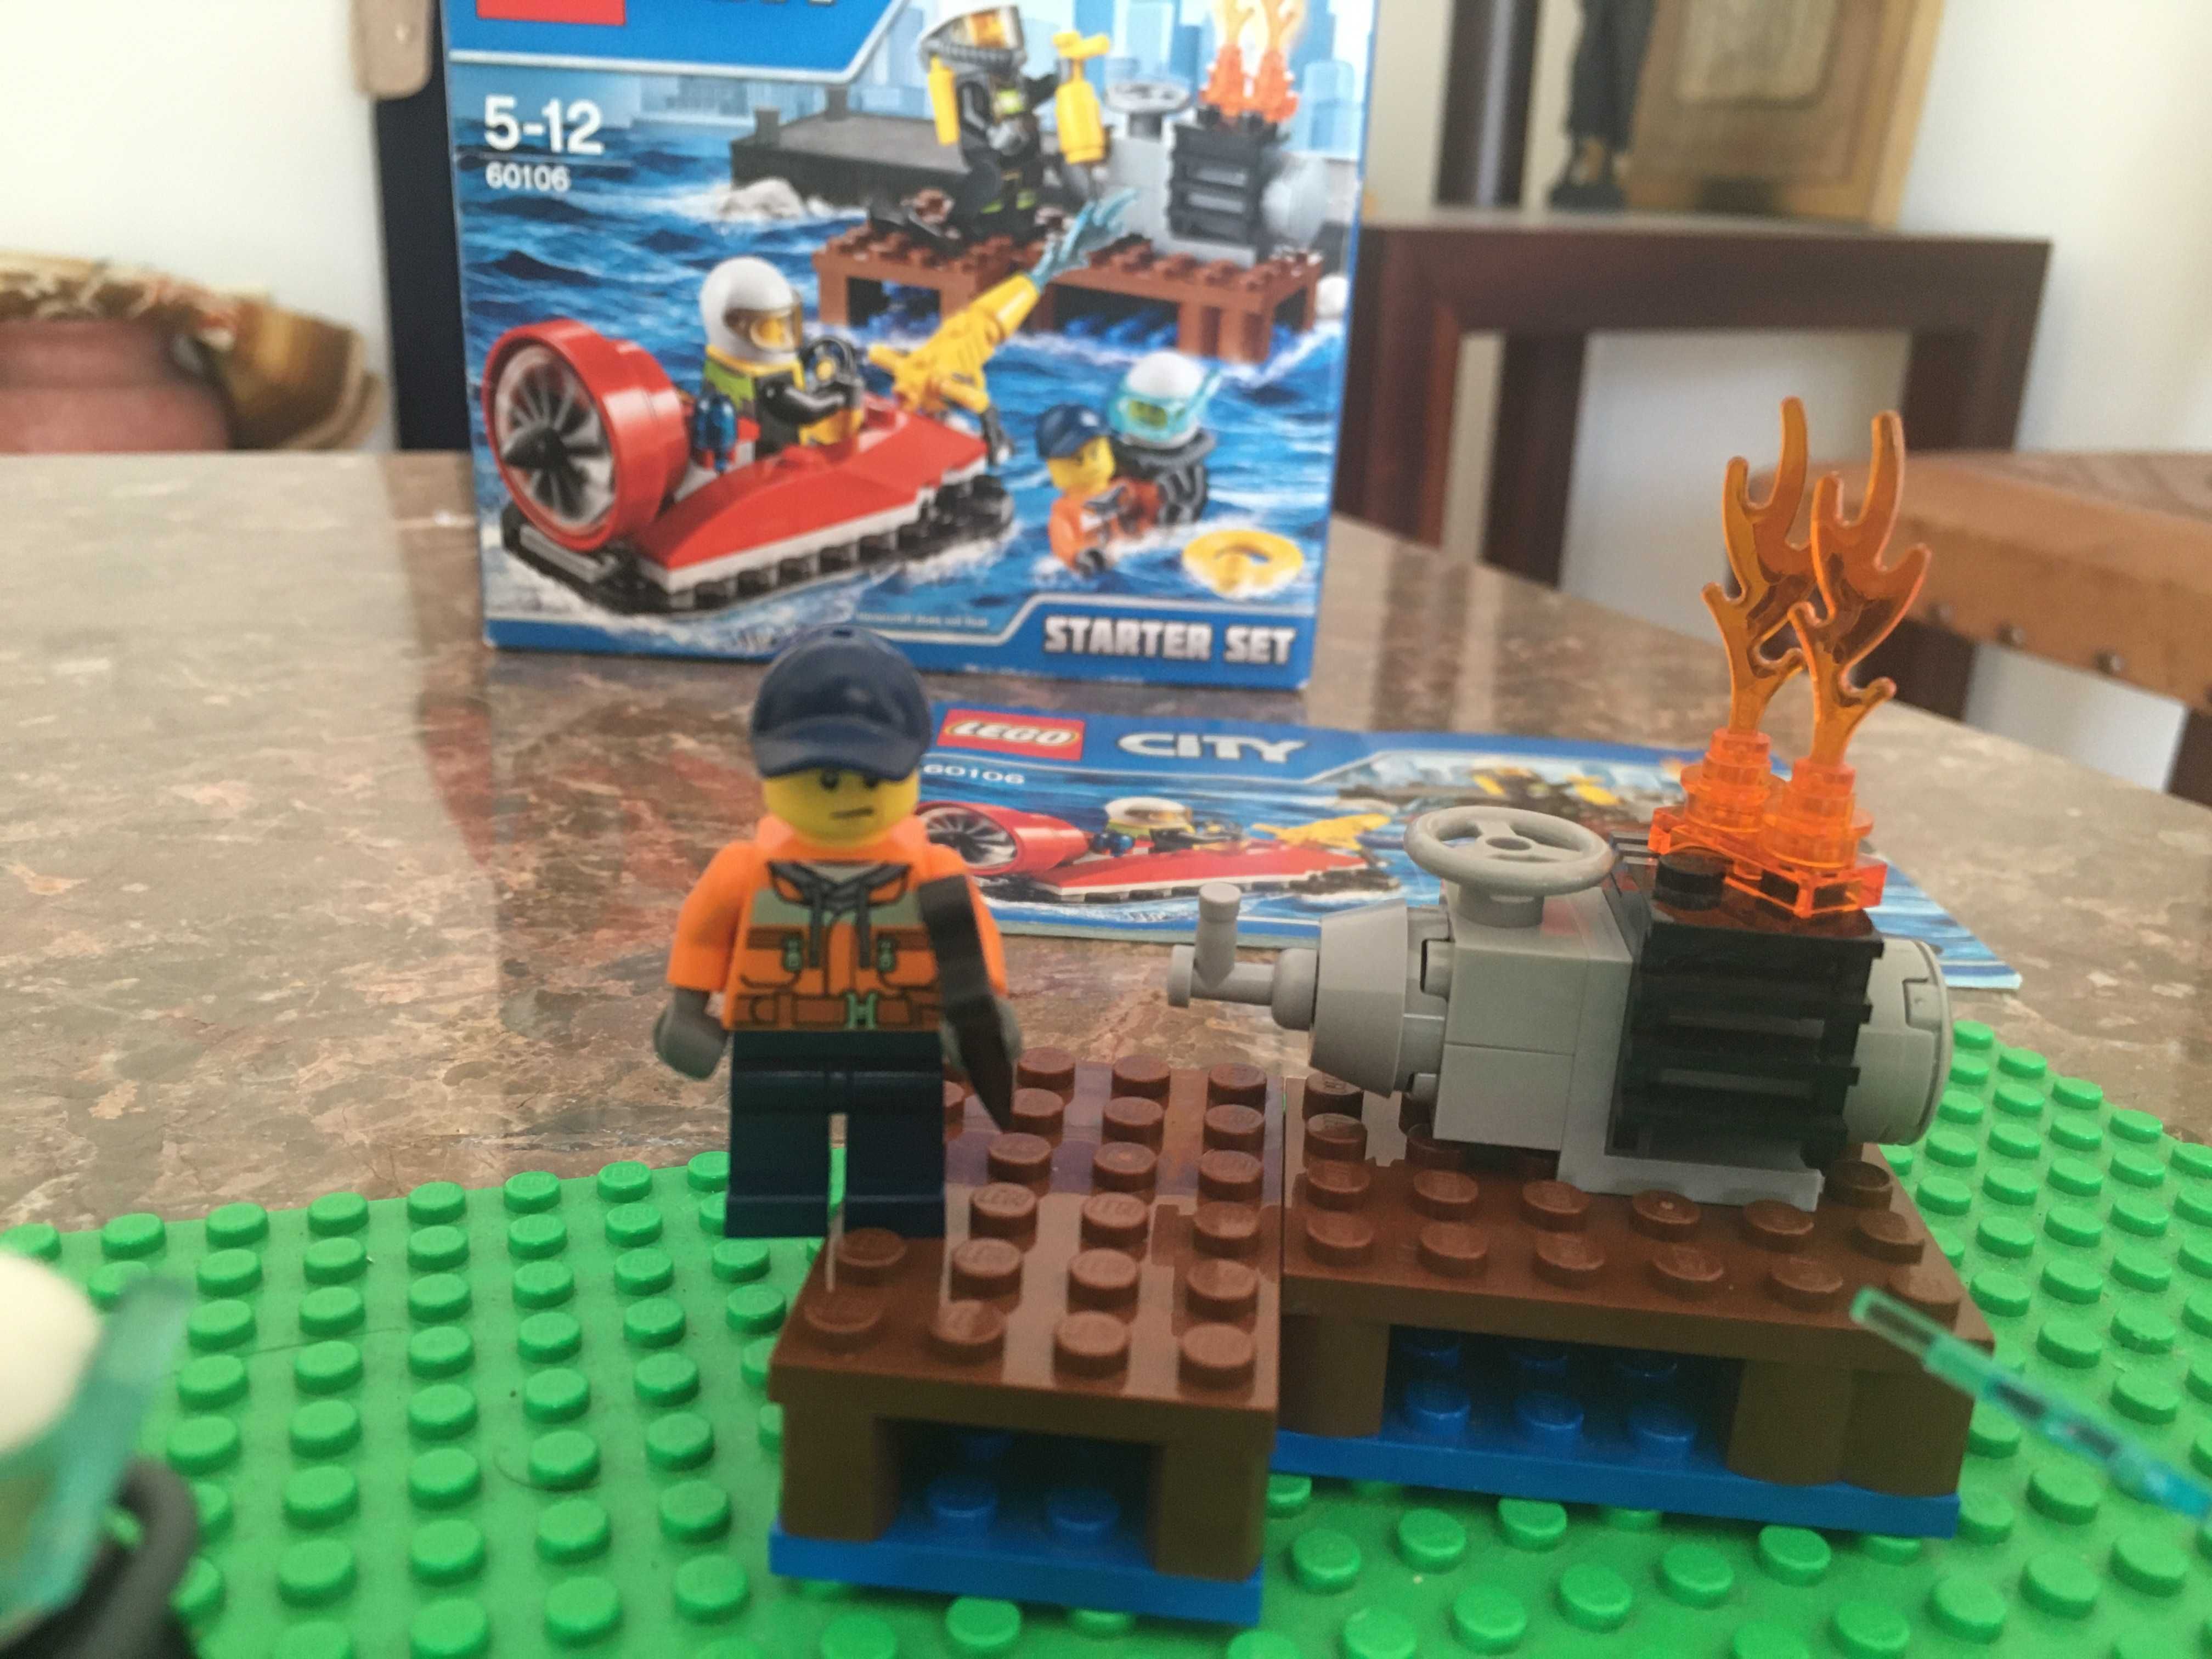 LEGO 60106 Completo e em bom estado